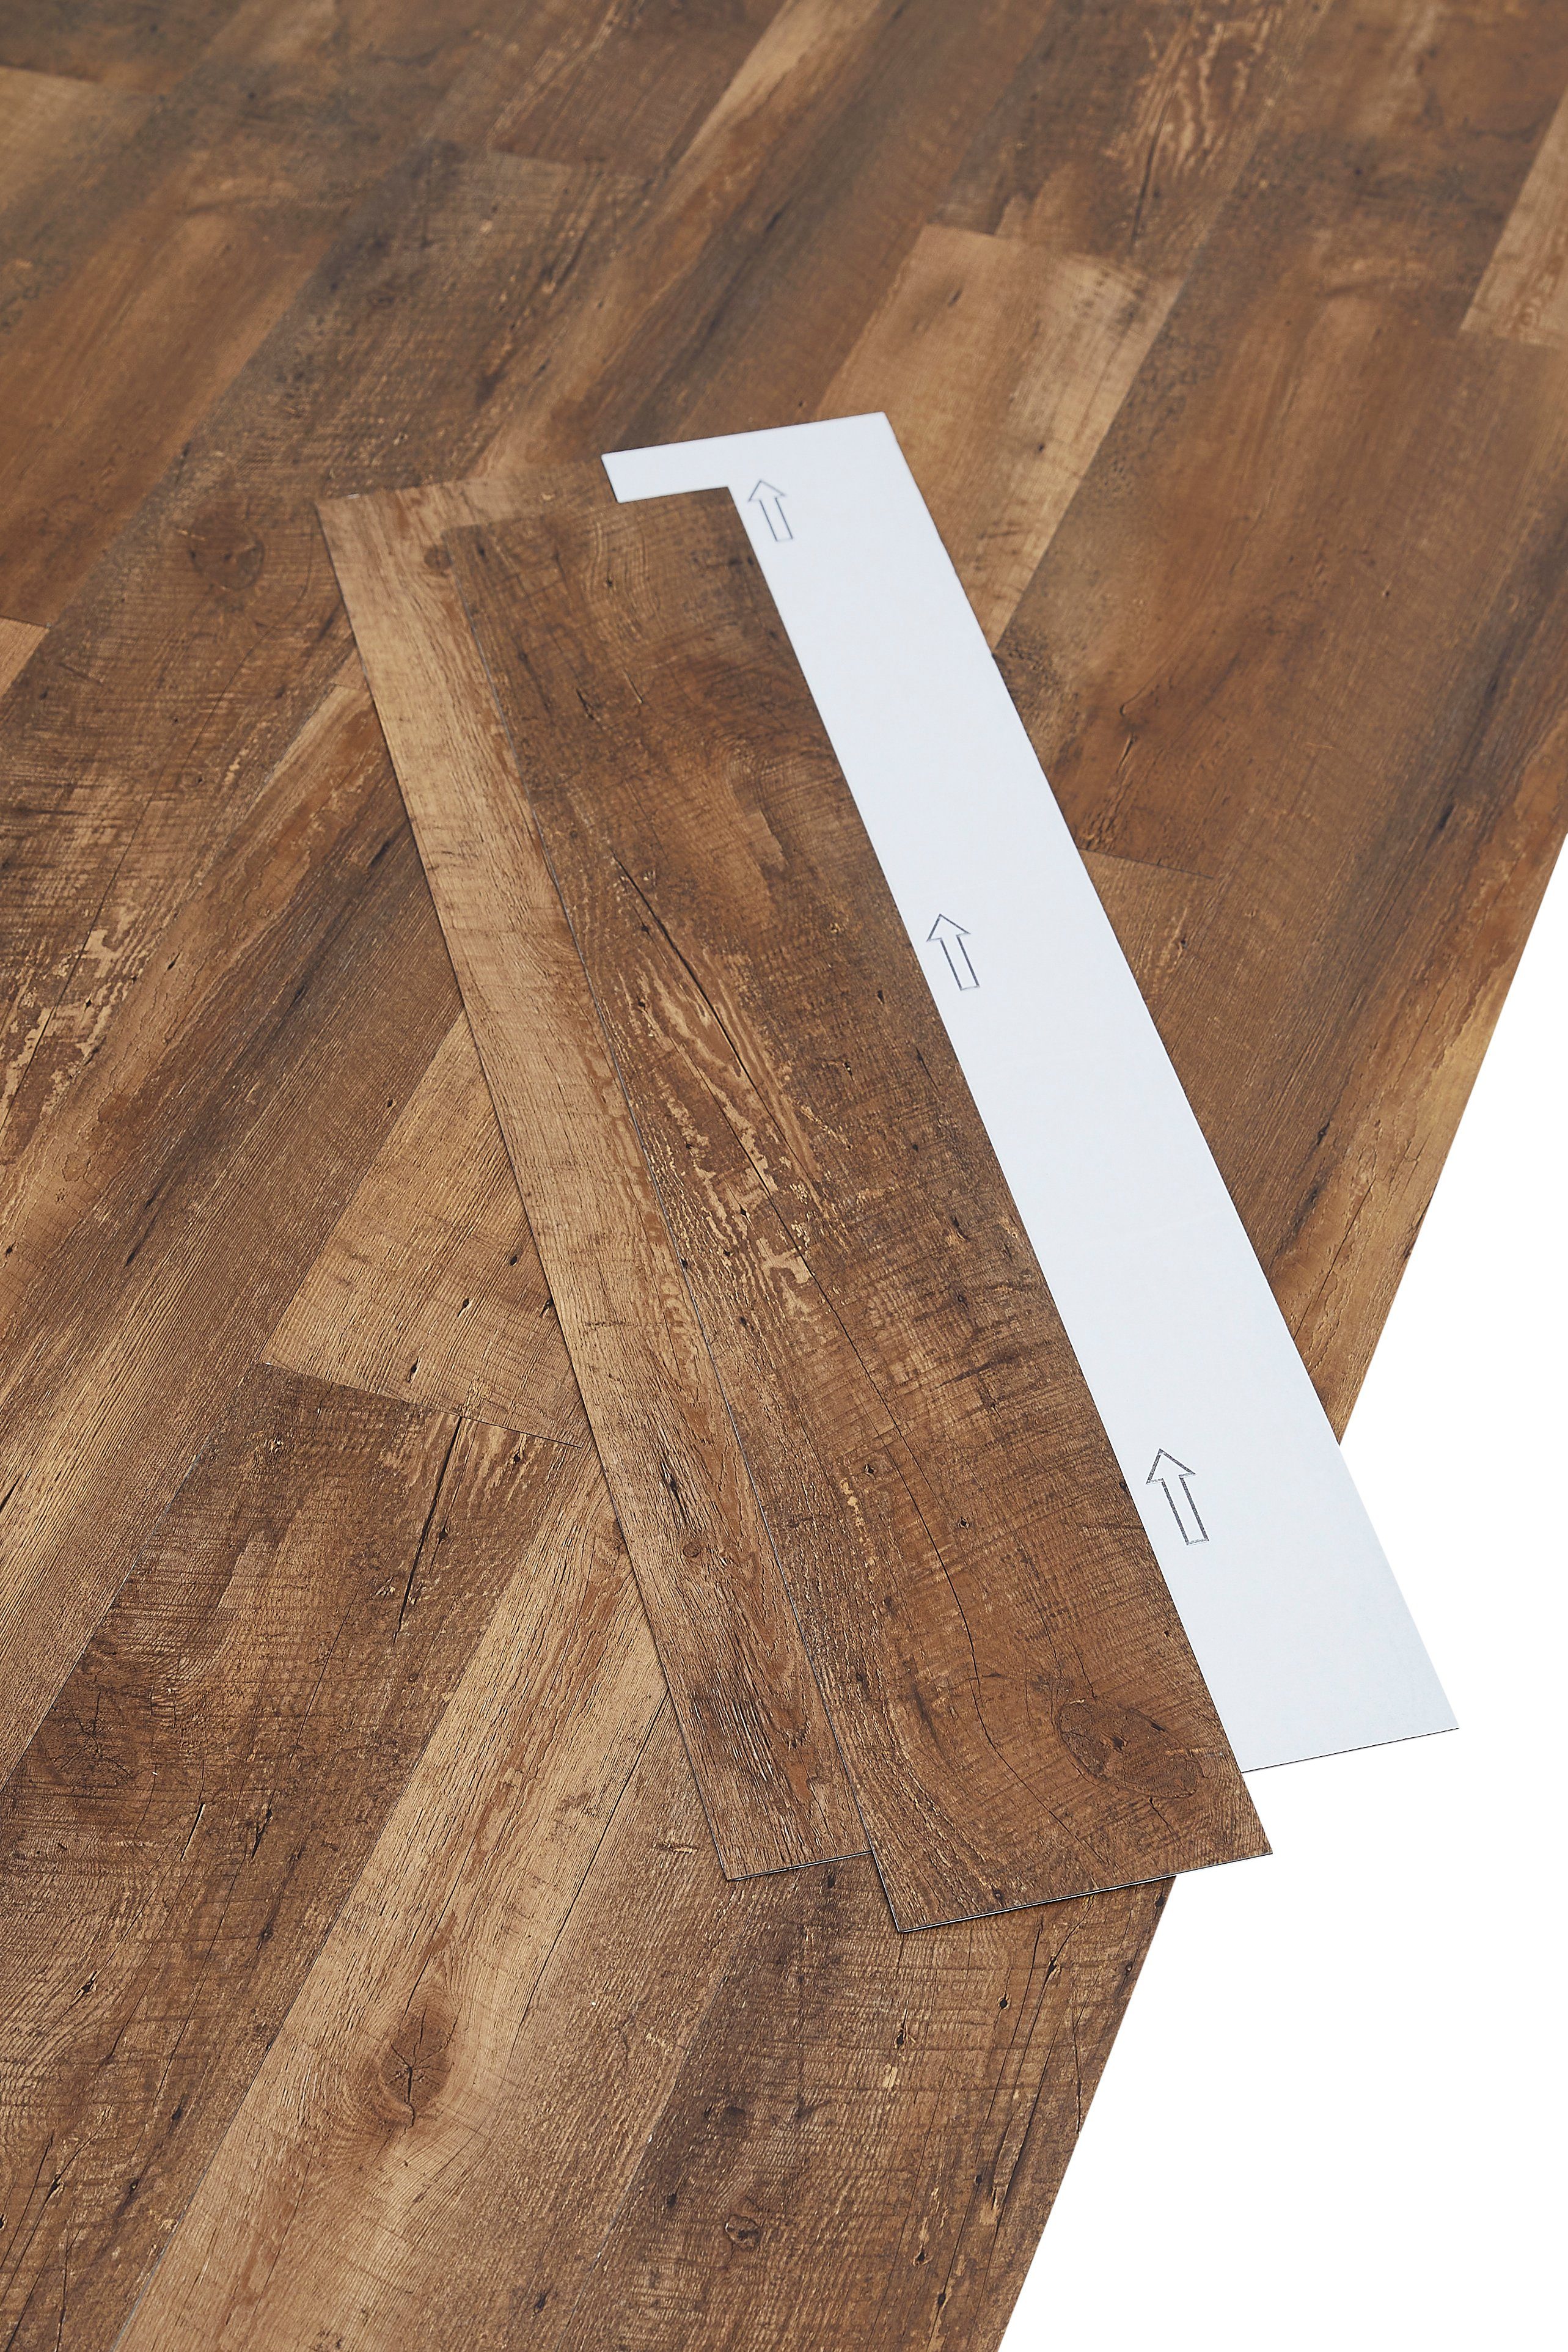 misento Designboden selbstklebende Vinyl-Planken, Holzoptik, Eicheoptik, 4,46 m², 32 Planken, Vinylplanken, zuschneidbar